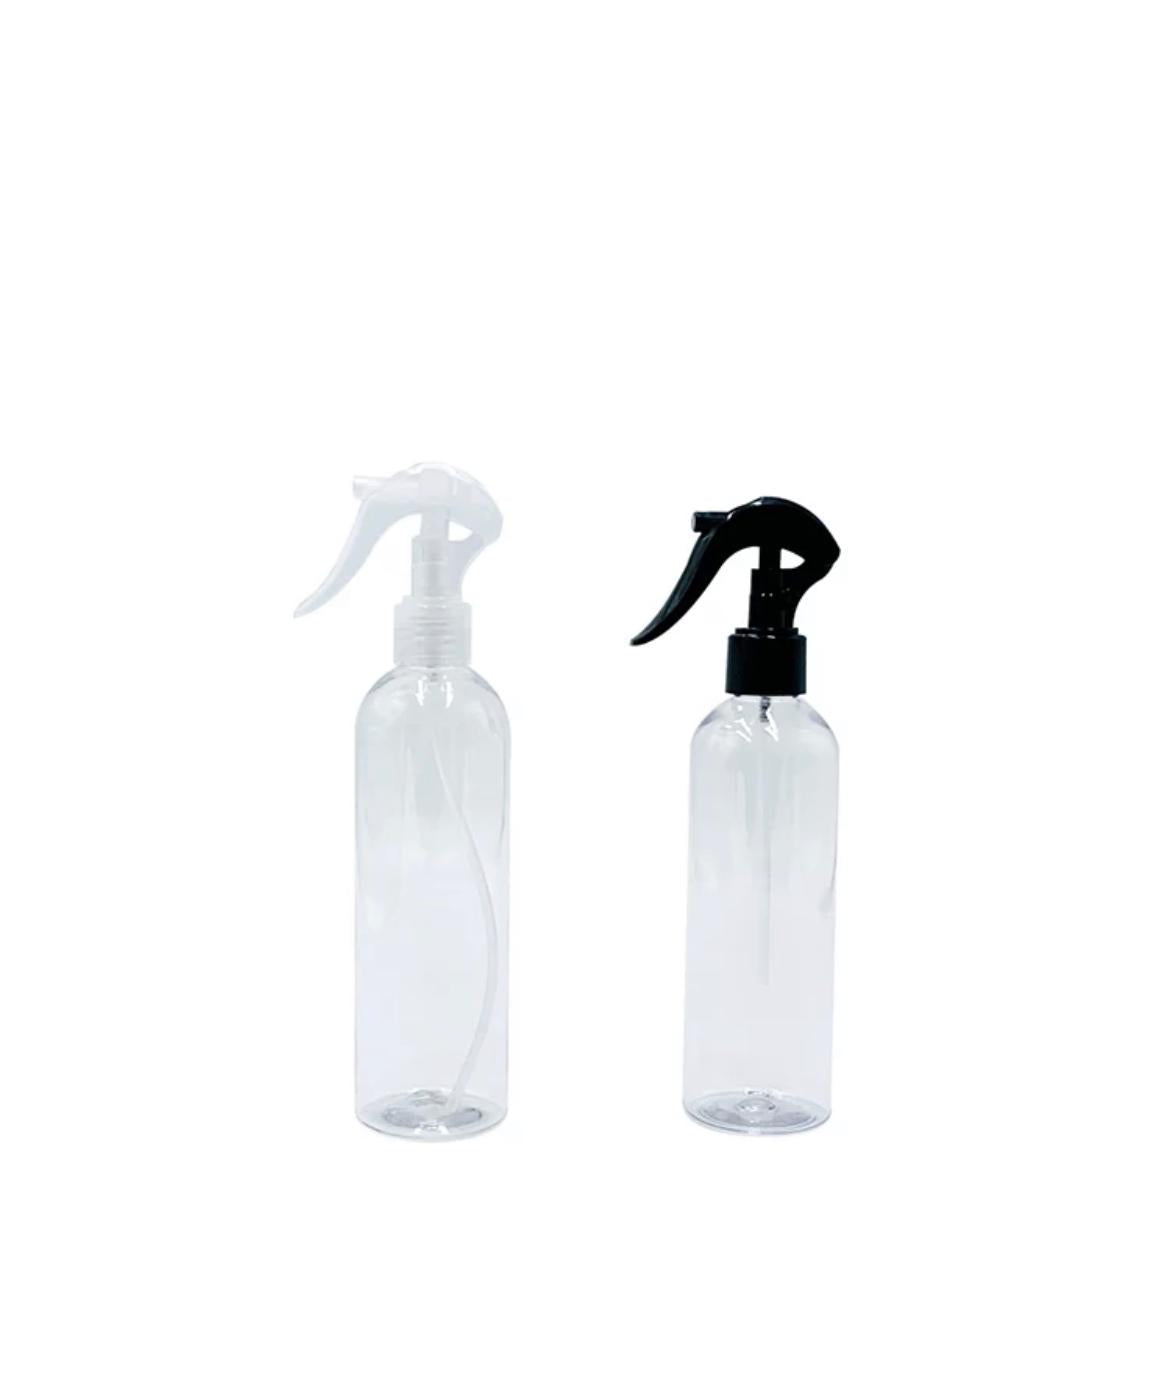 Gartentigerdusche: Sprühflasche, Drucksprühflasche zur Befeuchtung von Terrarien 250ml